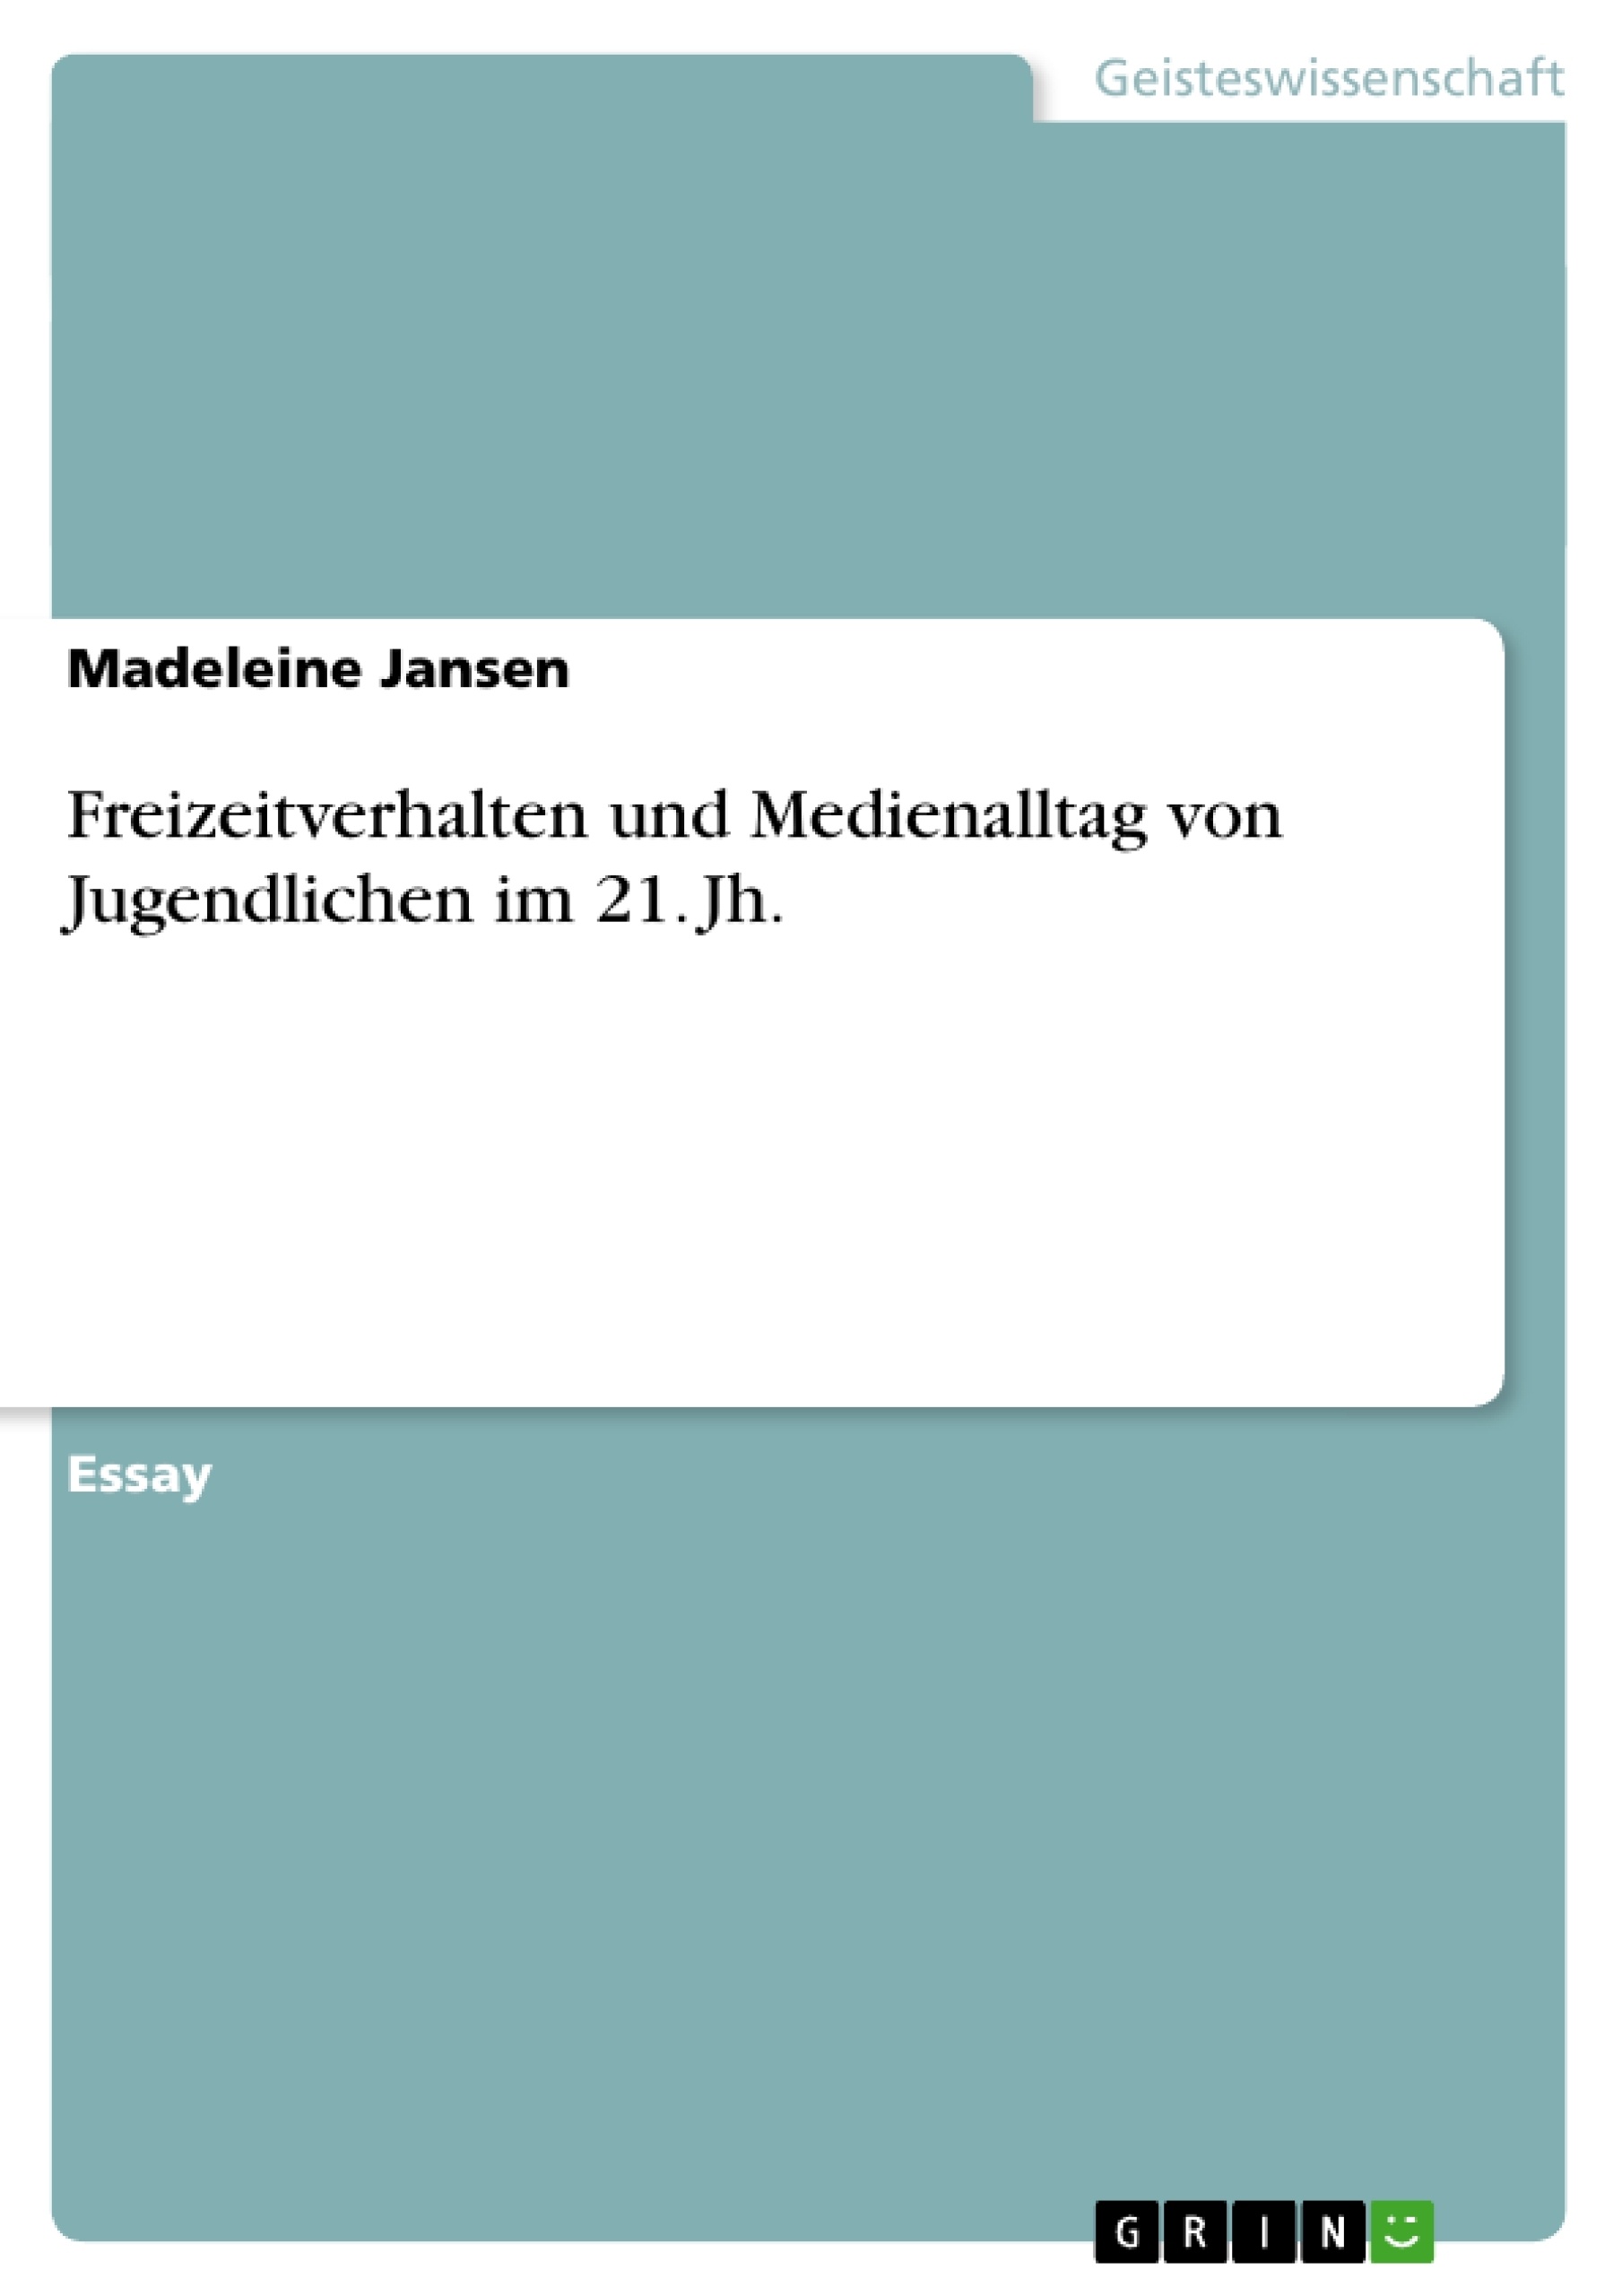 Titre: Freizeitverhalten und Medienalltag von Jugendlichen im 21. Jh.